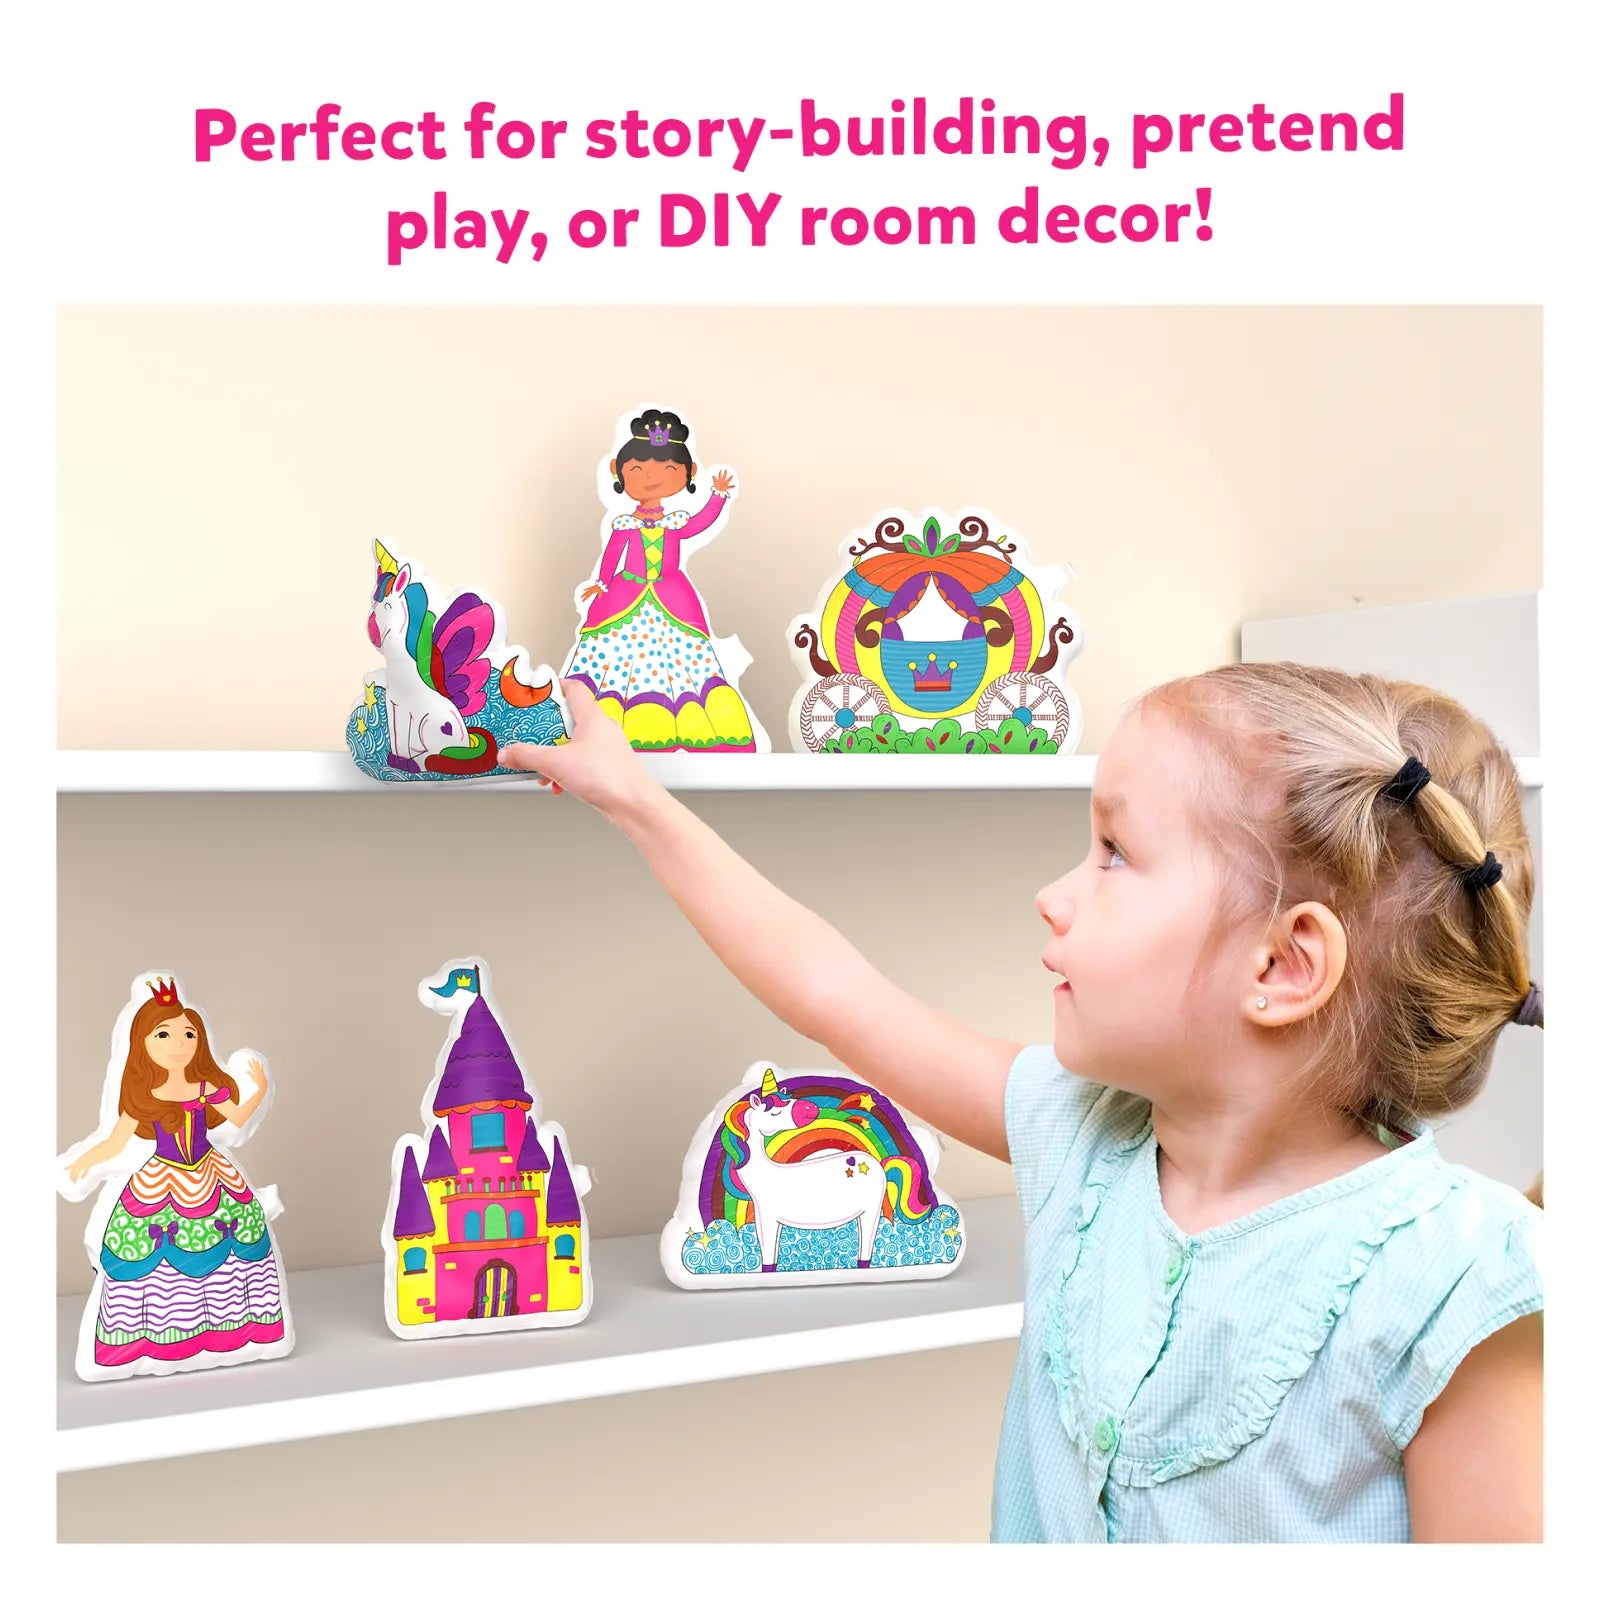 Inflatable Art - 3D Unicorns & Princesses (ages 4-7)